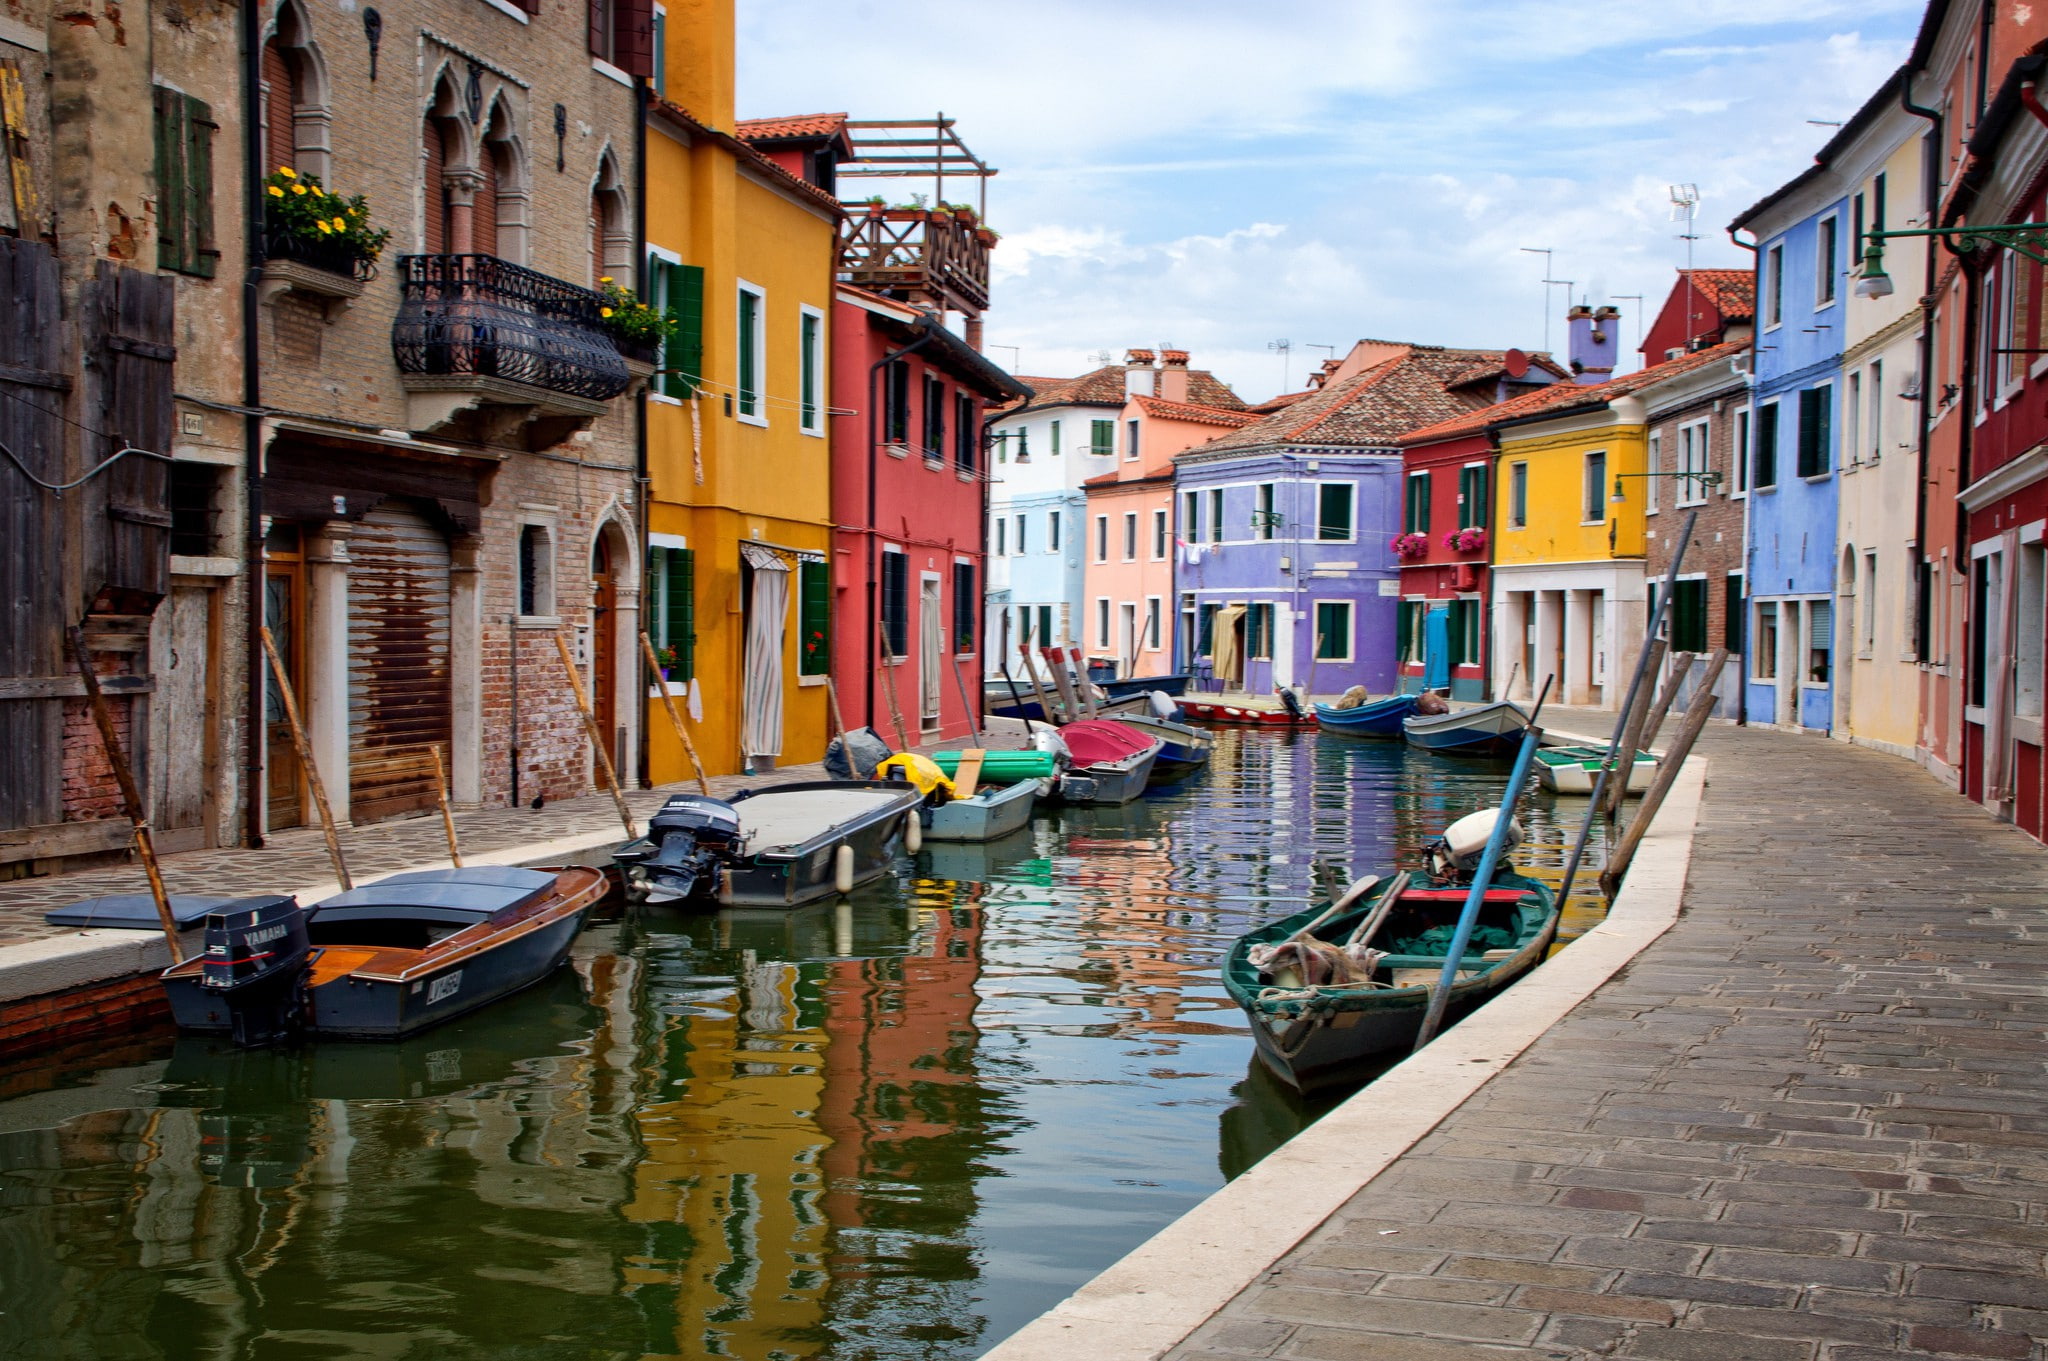 Venice in Italy, sky, house, Burano island, canal boats